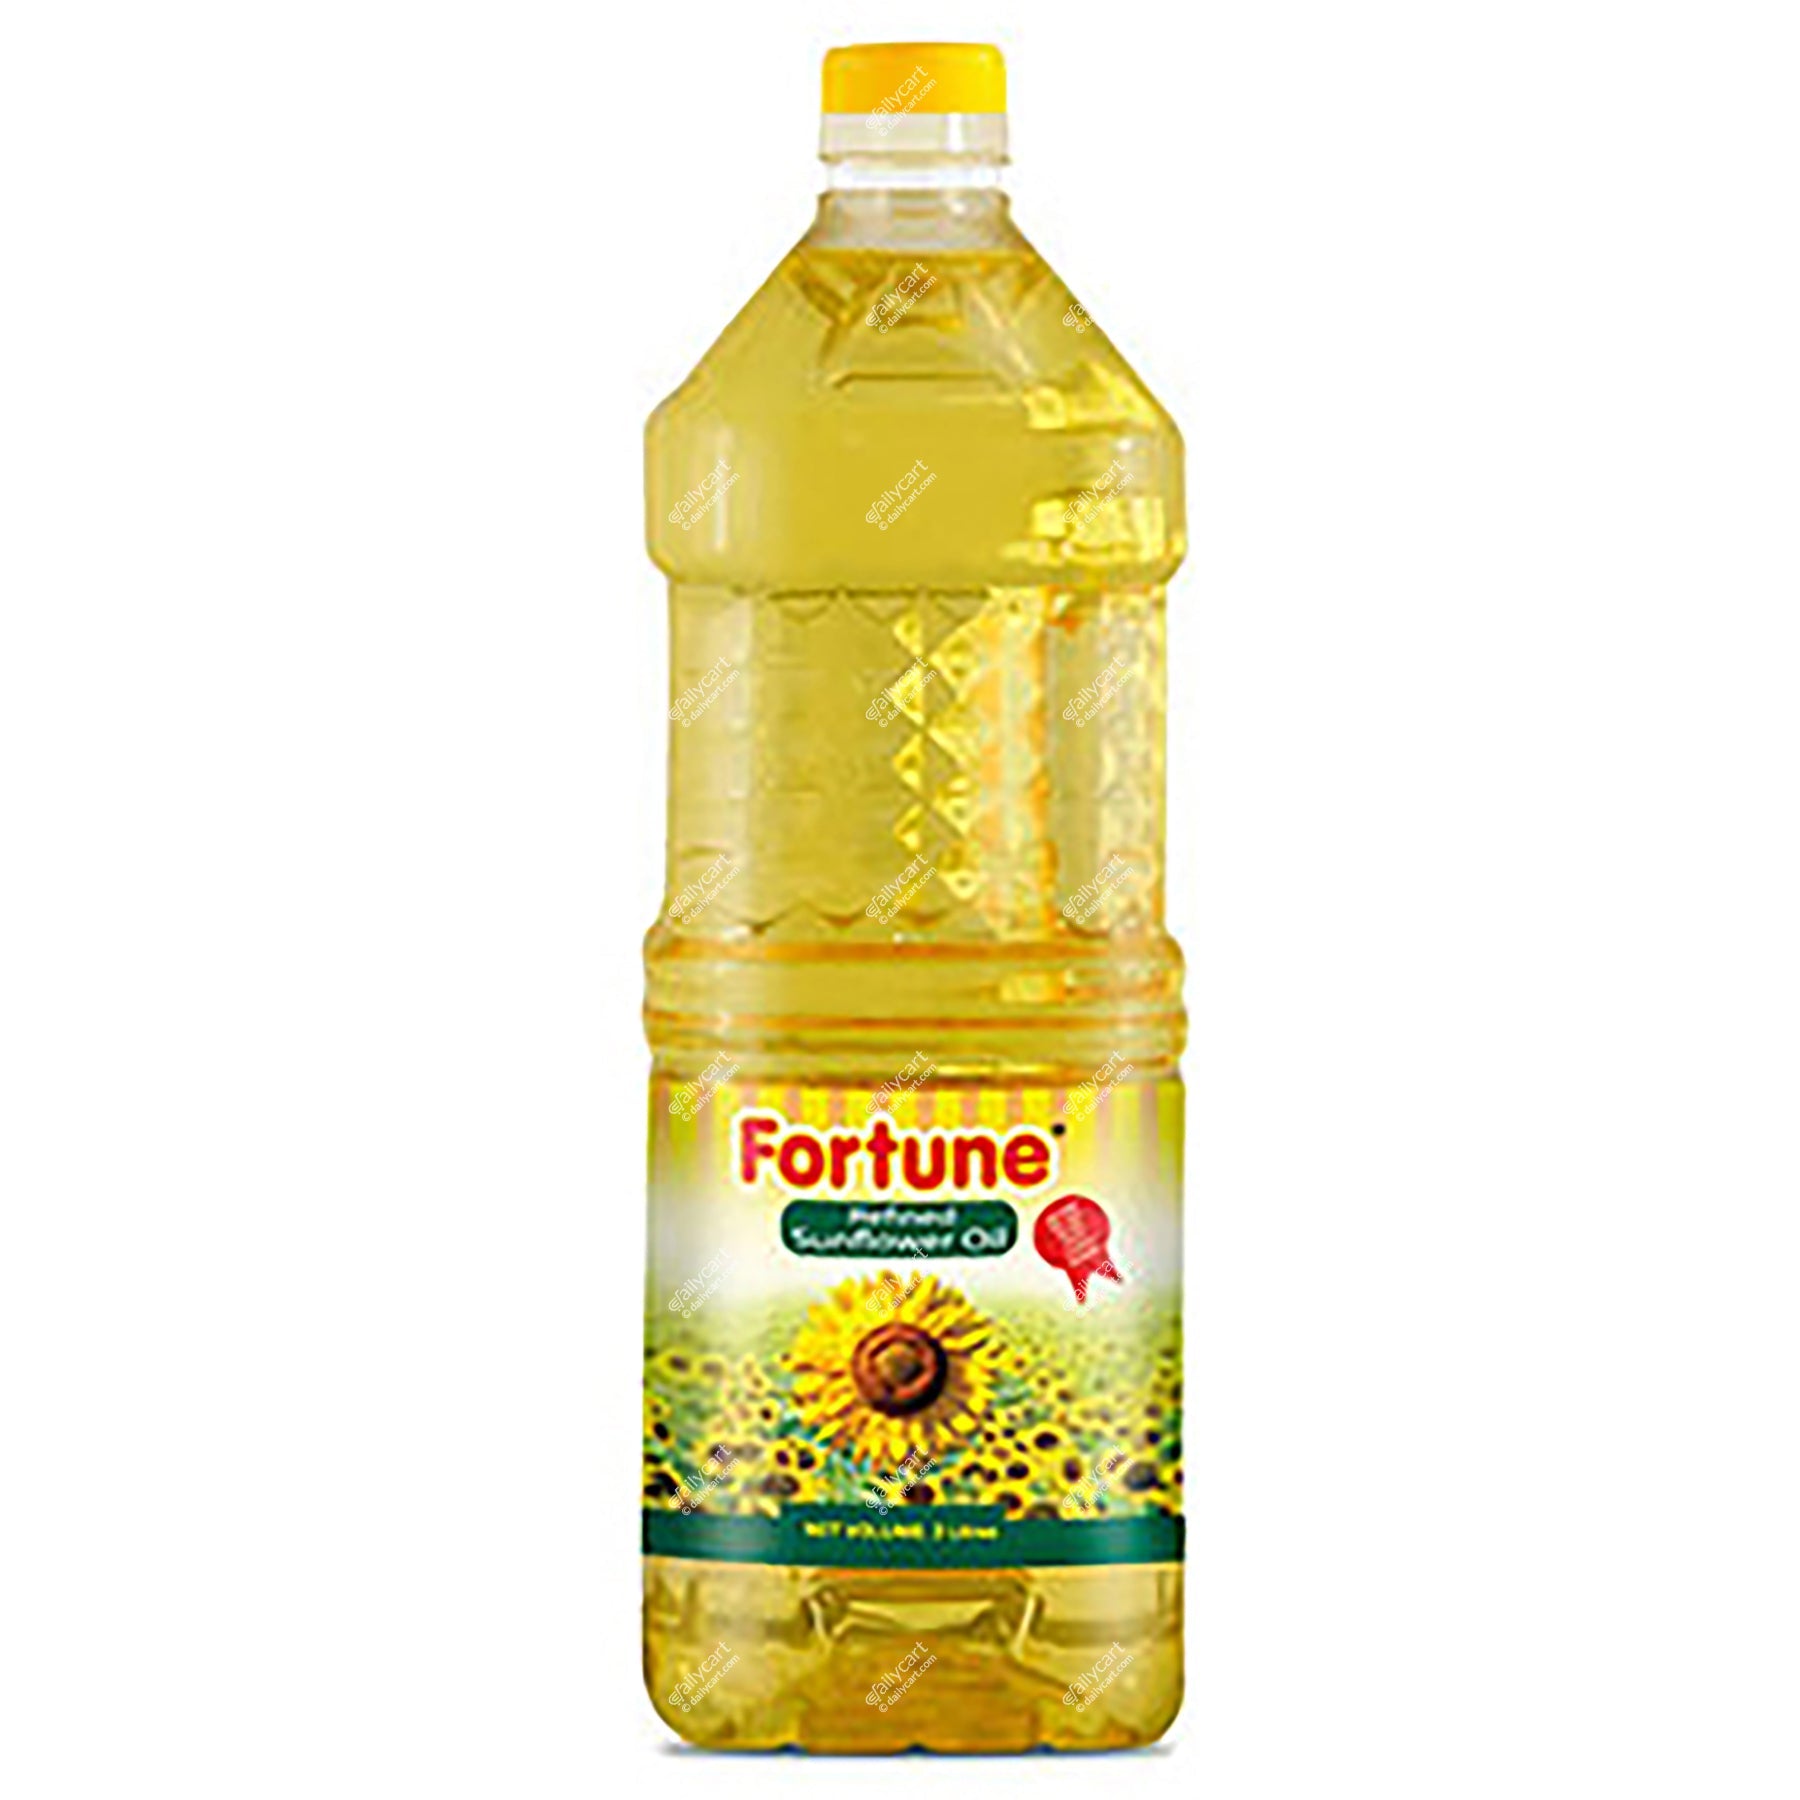 Fortune Sunflower Oil, 3 litre